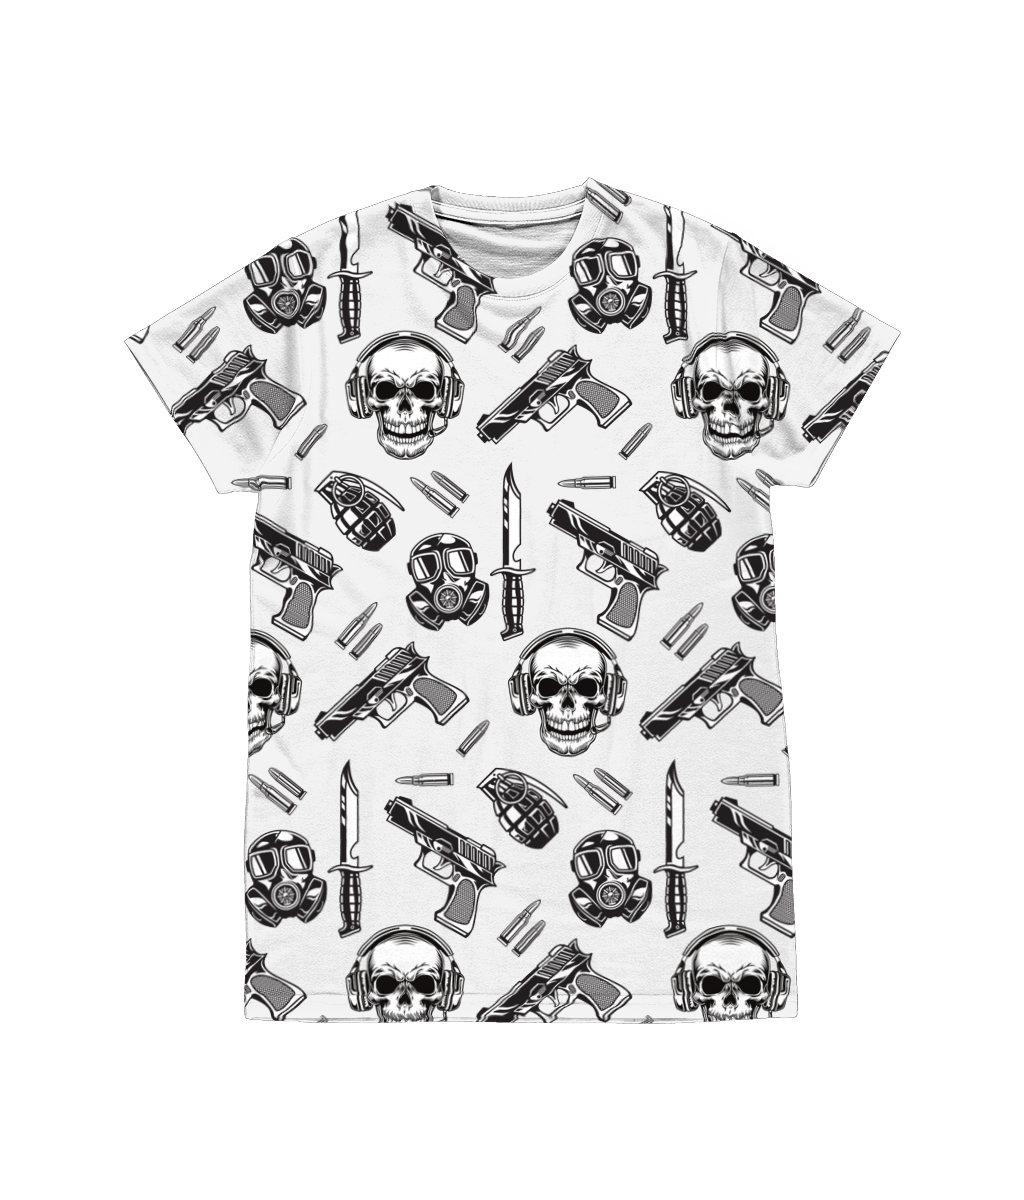 Gear Up Print T-Shirt